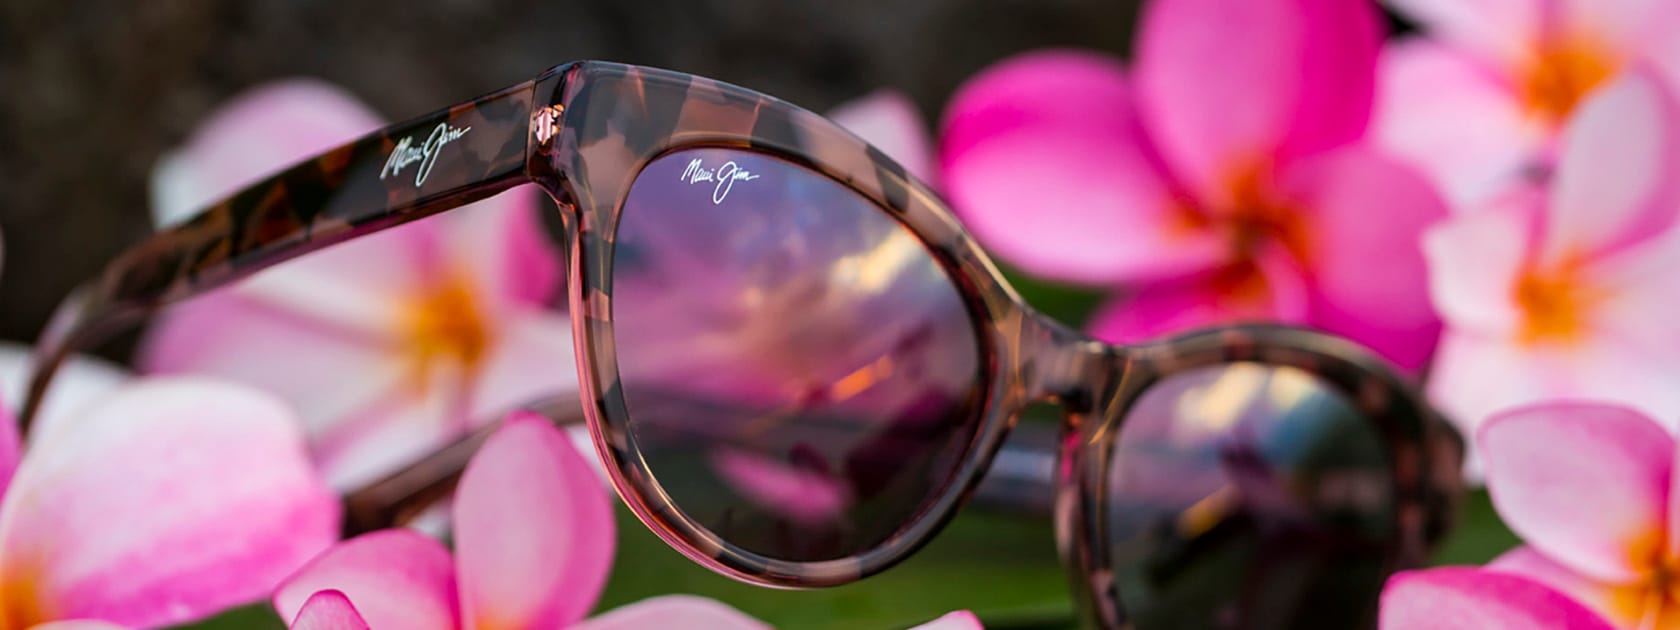 Sonnenbrille mit Schildpatt-Fassung auf rosafarbenen Blumen